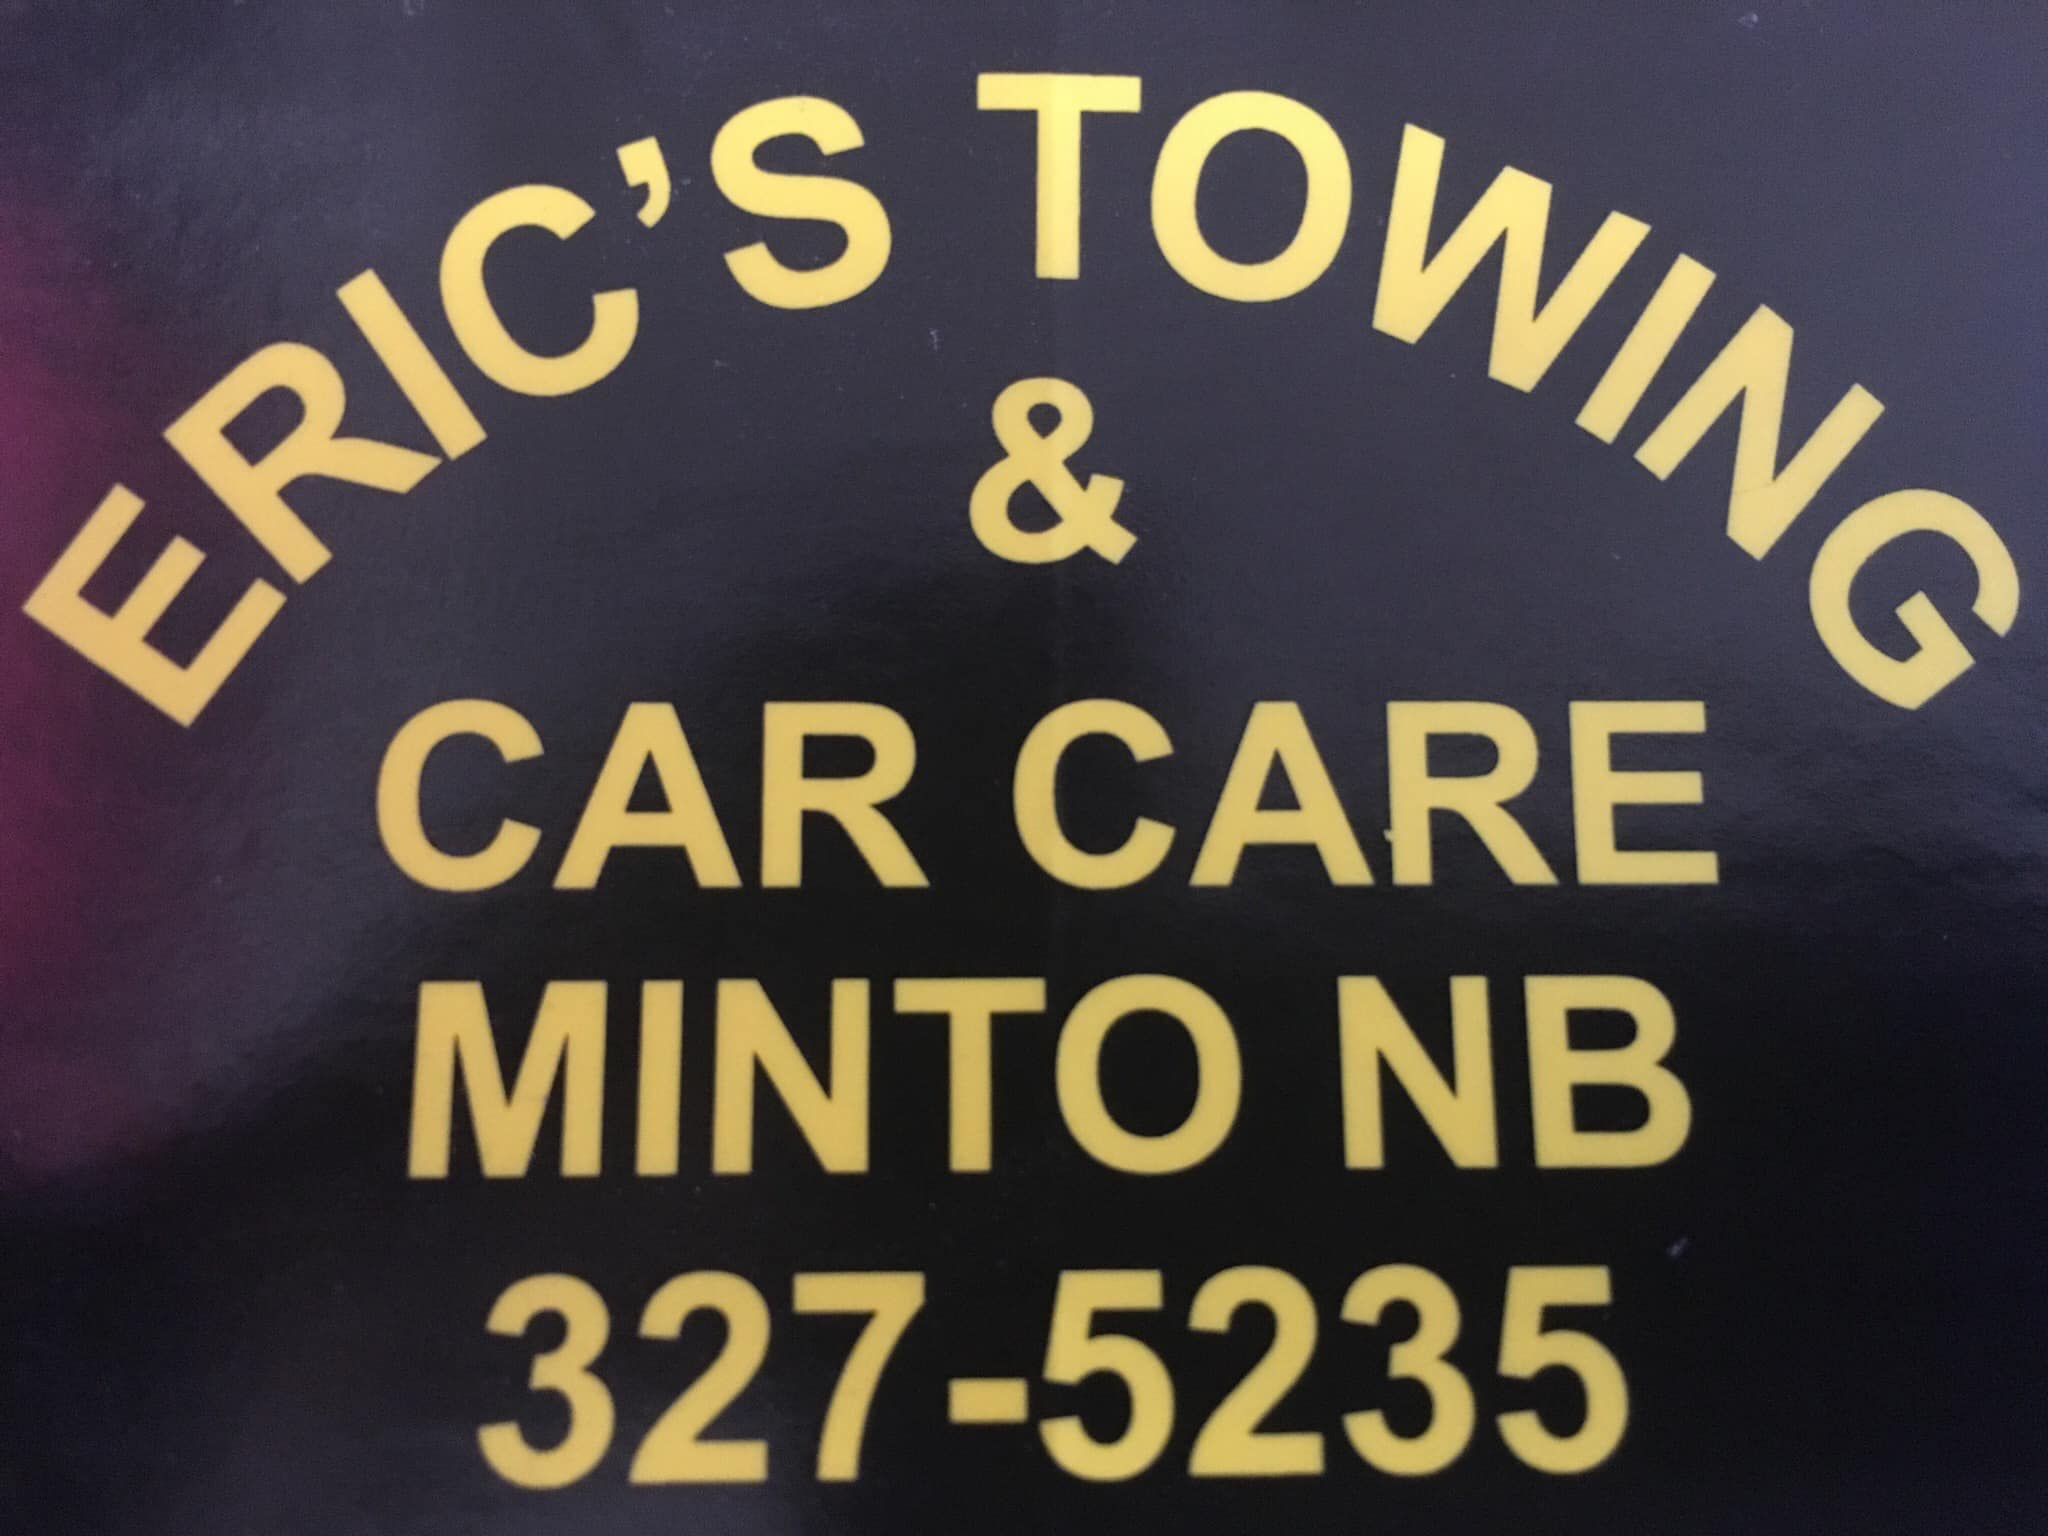 Eric's Towing & Car Care 45 Hemlock St, Minto New Brunswick E4B 3E2